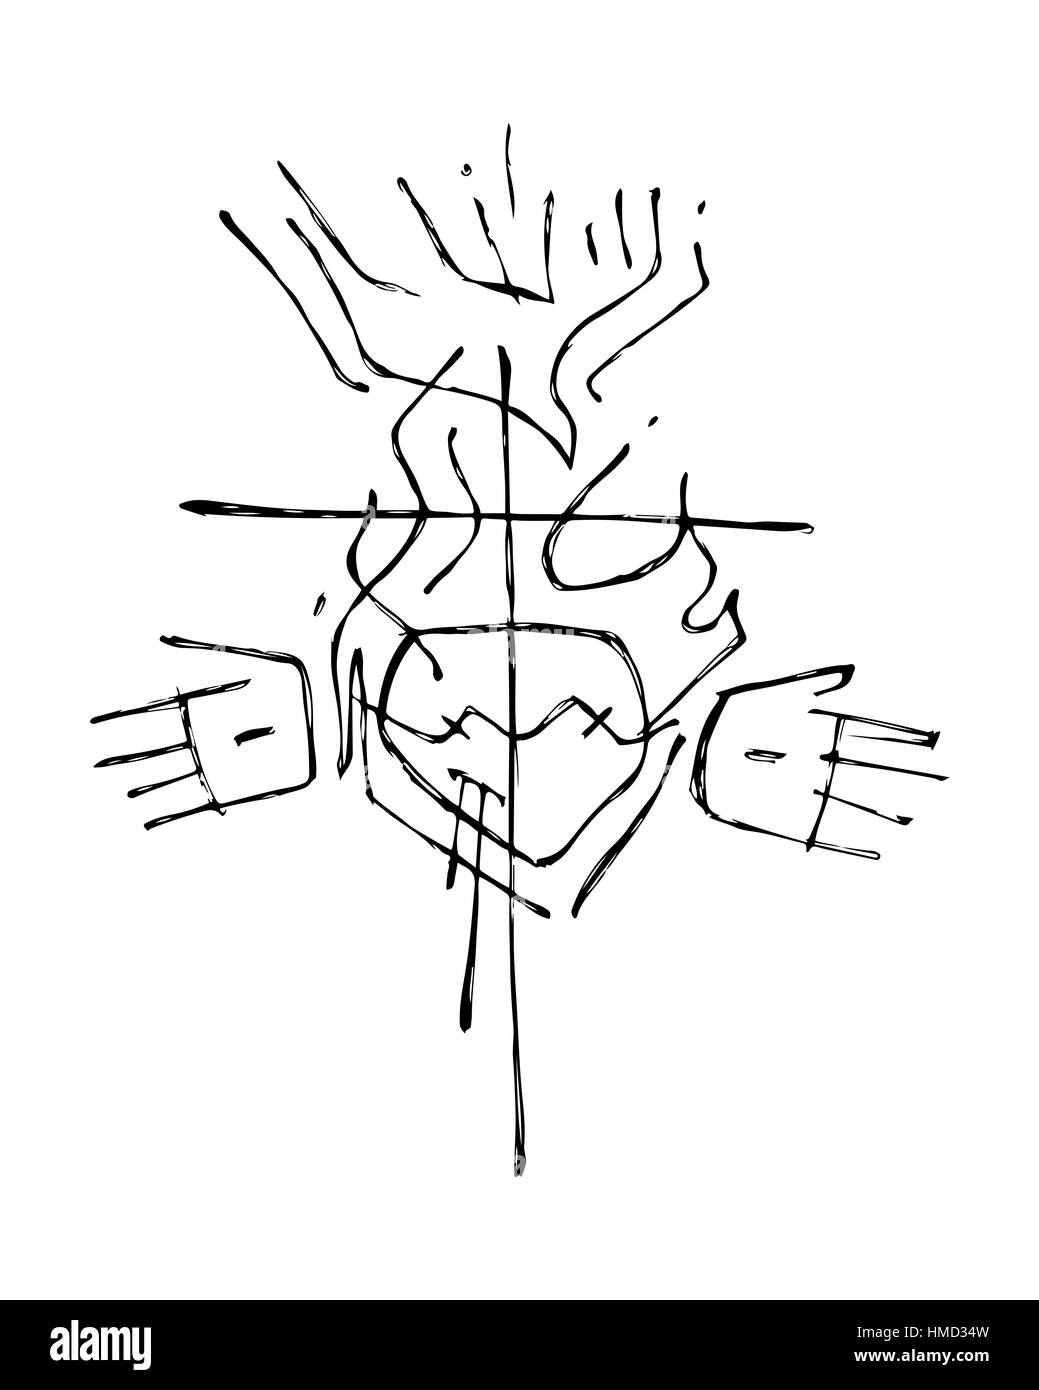 Hand drawn vector illustration ou dessin d'une croix et des symboles religieux Banque D'Images